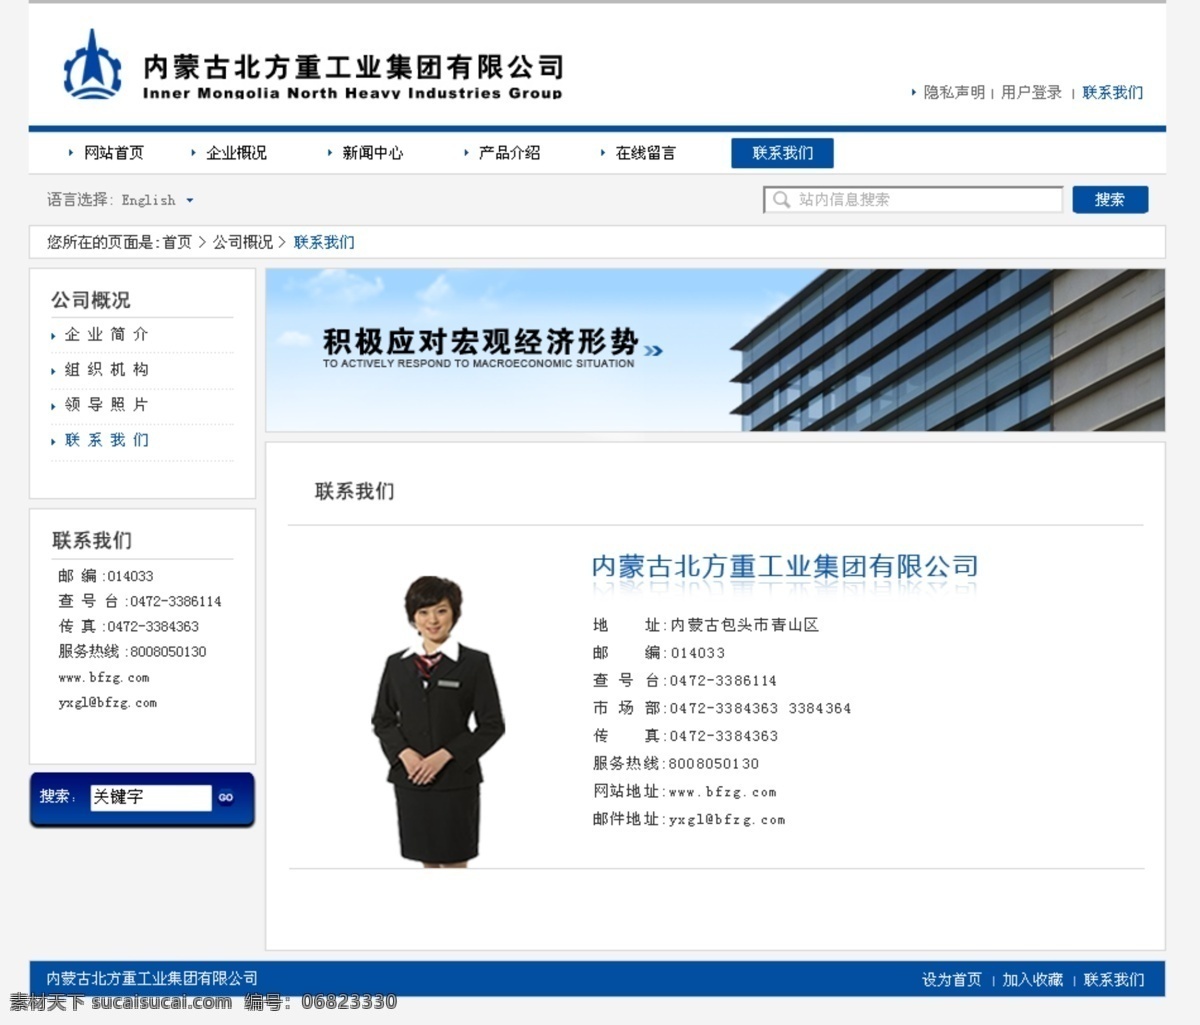 联系我们 企业 网页模板 源文件 中文模版 重工业 联系 我们 网页设计 模板下载 重工业网站 网页素材